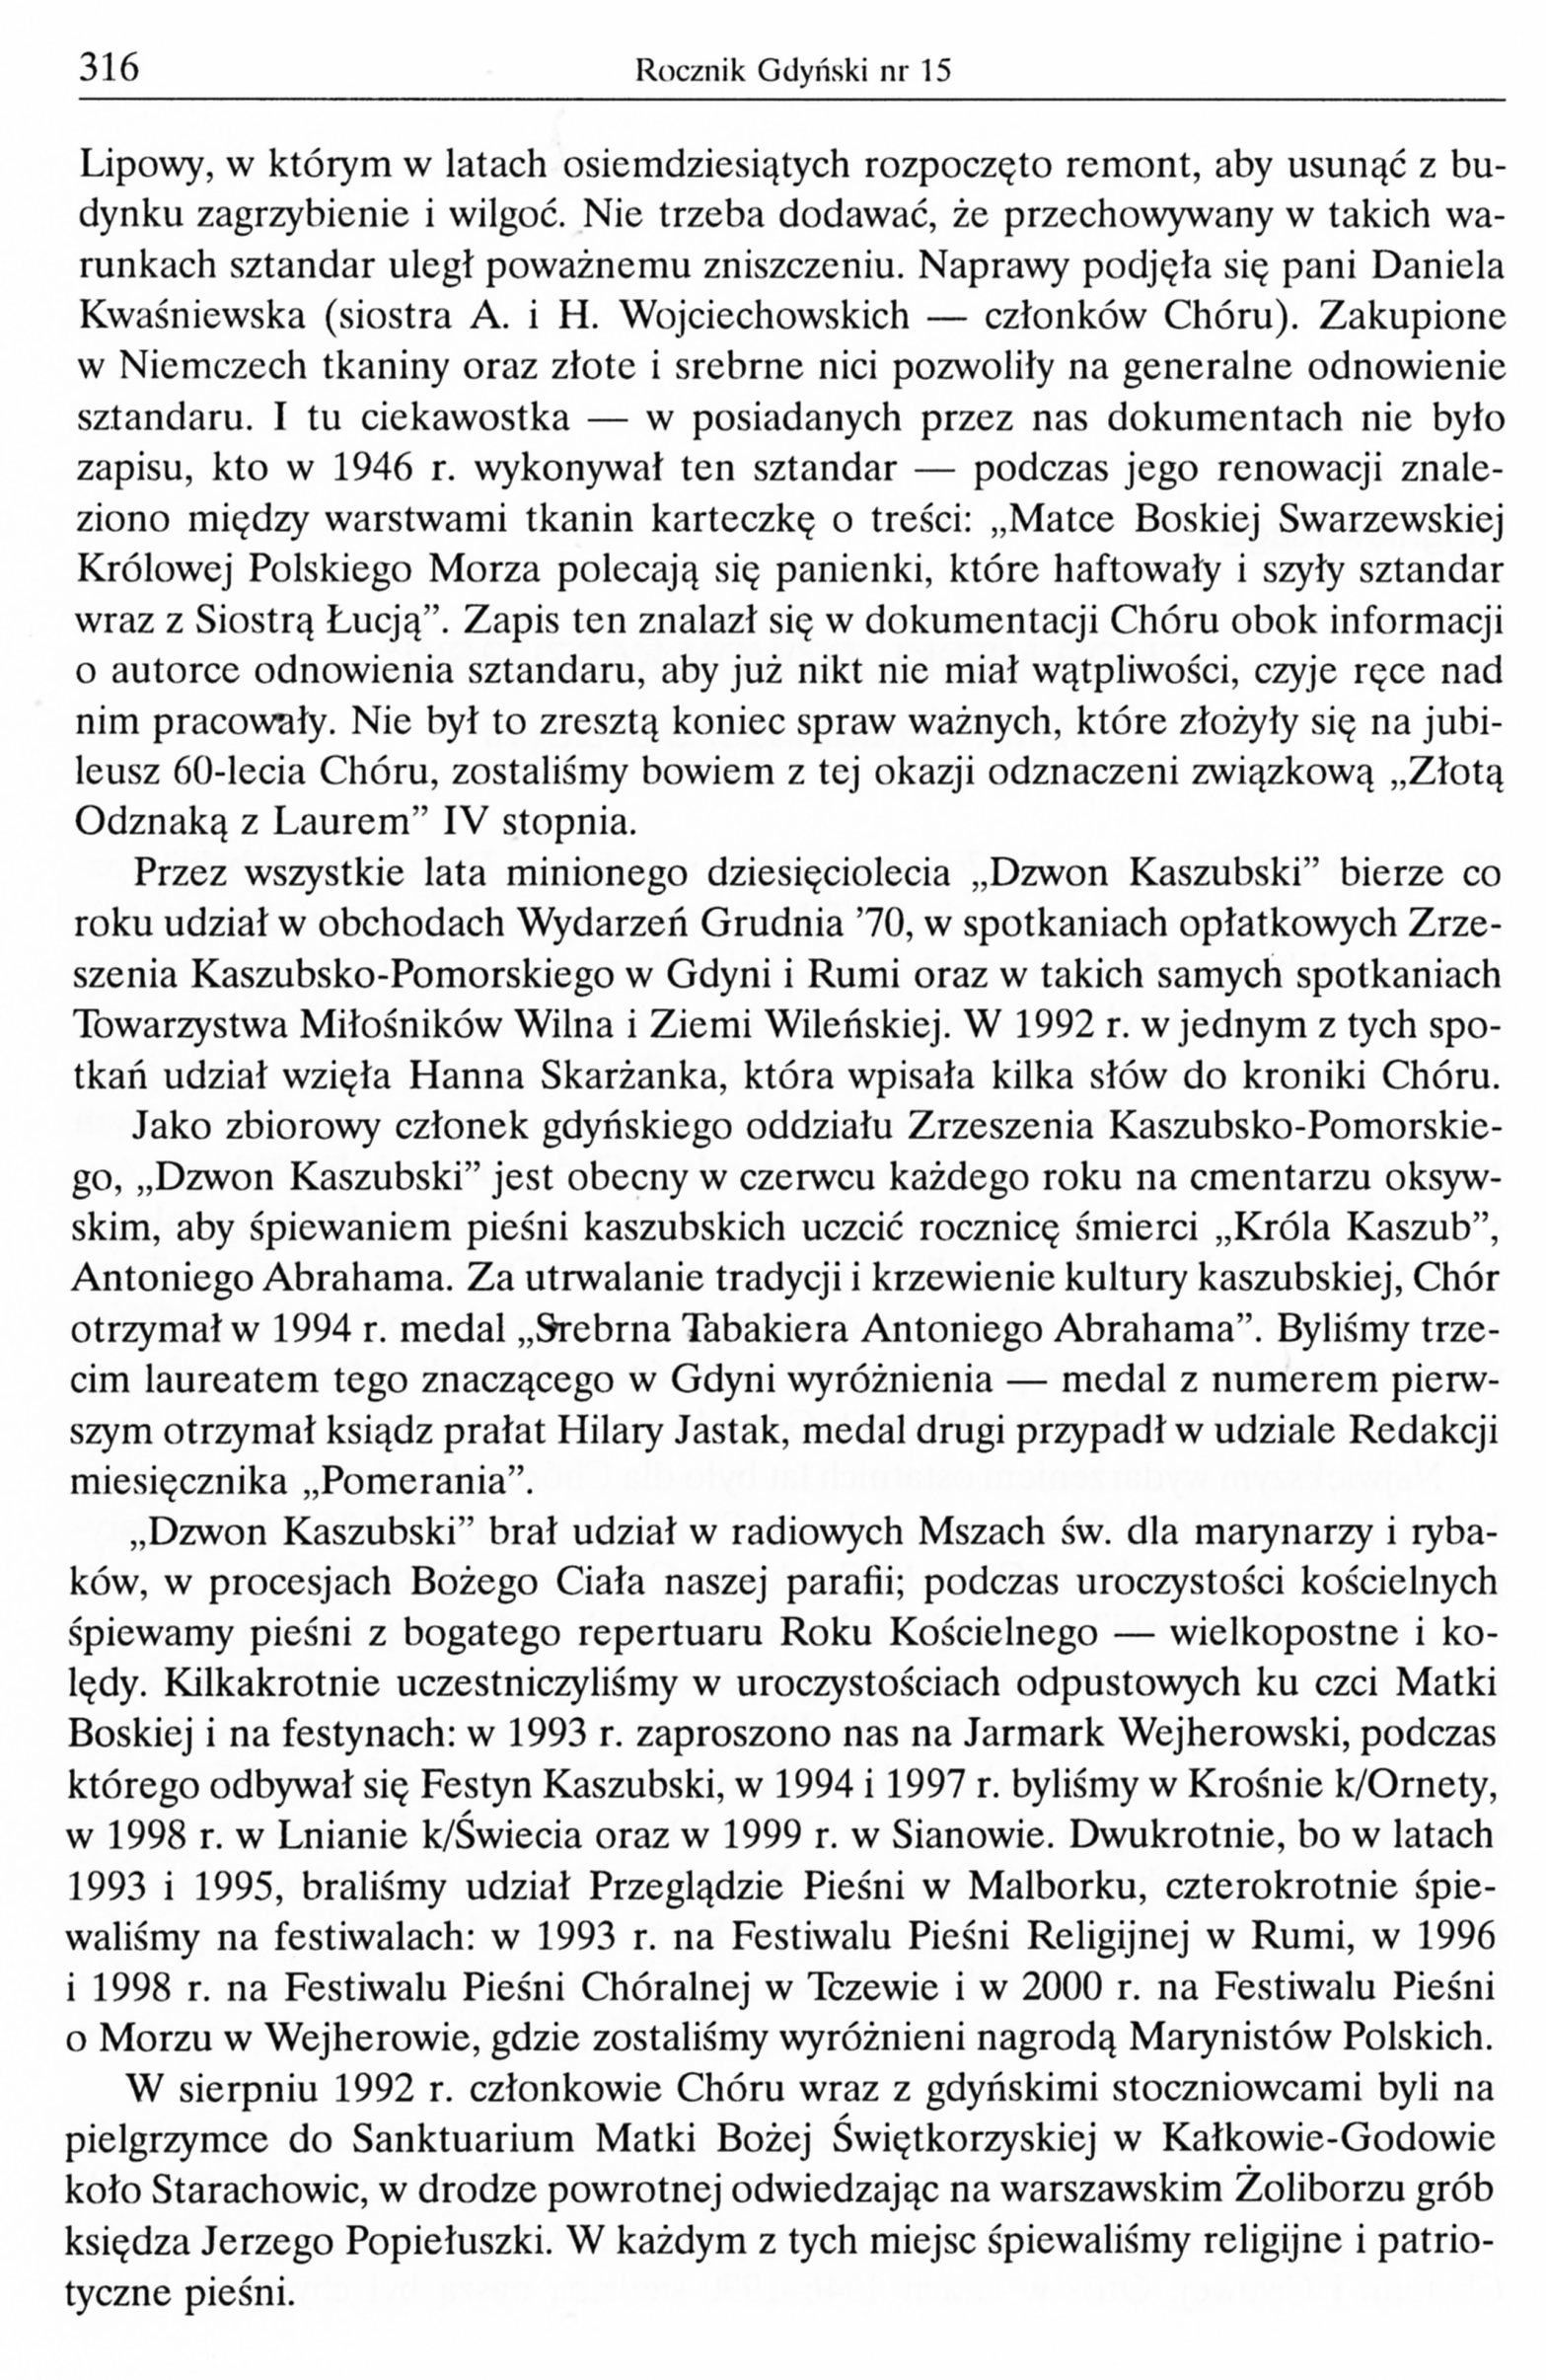 Chór Męski "Dzwon Kaszubski". 70 lat działalności dla Gdyni